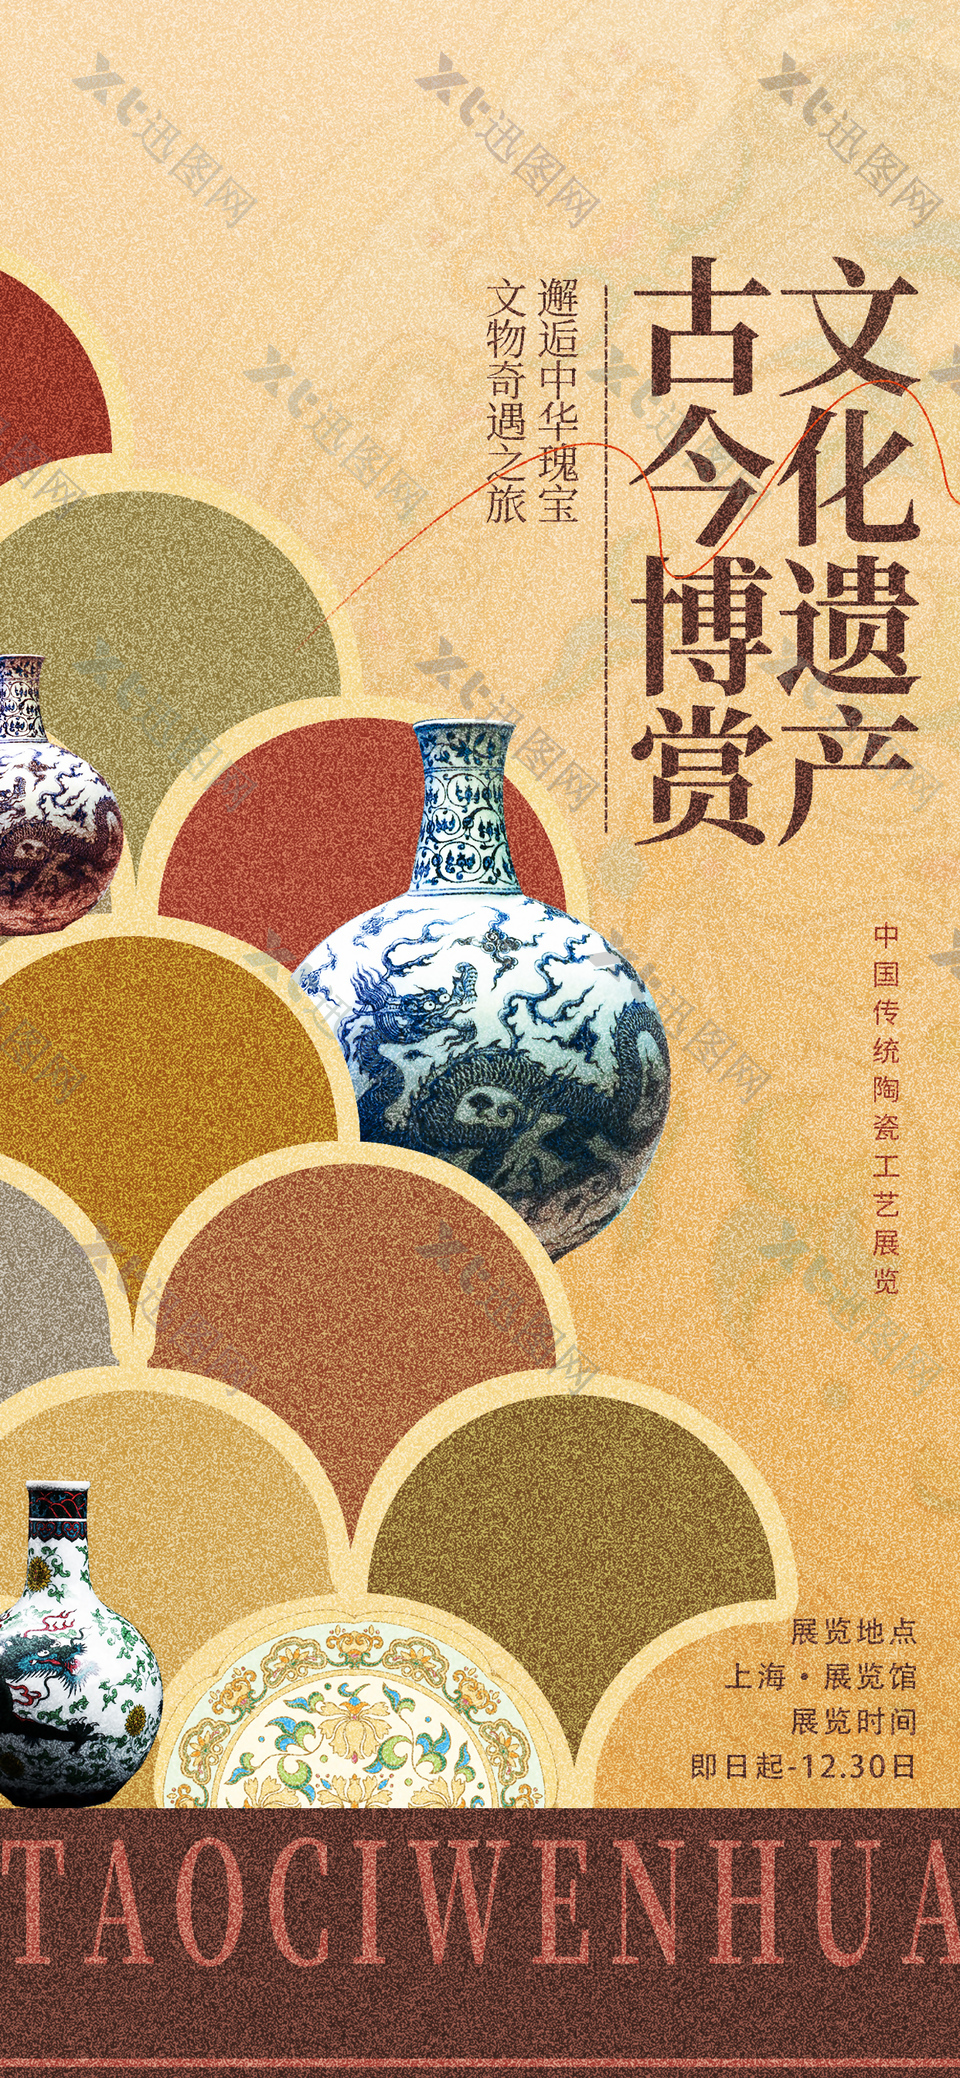 中国传统陶瓷工艺展览宣传海报设计